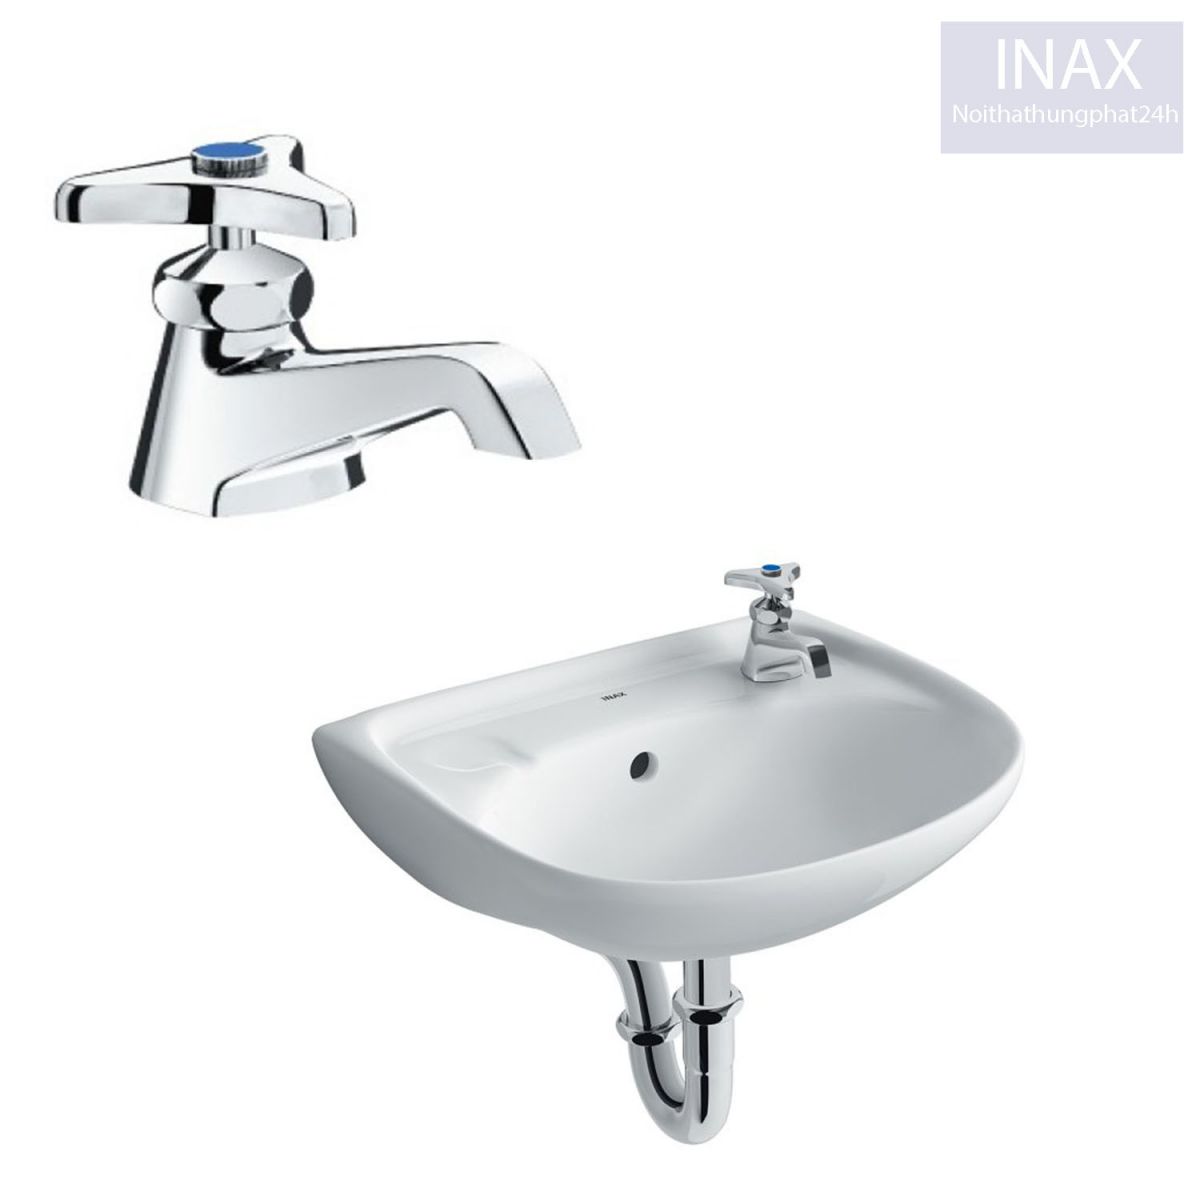 Mẫu vòi rửa mặt Inax nước lạnh thân thấp sử dụng cho lavabo treo tường, đặt bàn, âm bàn